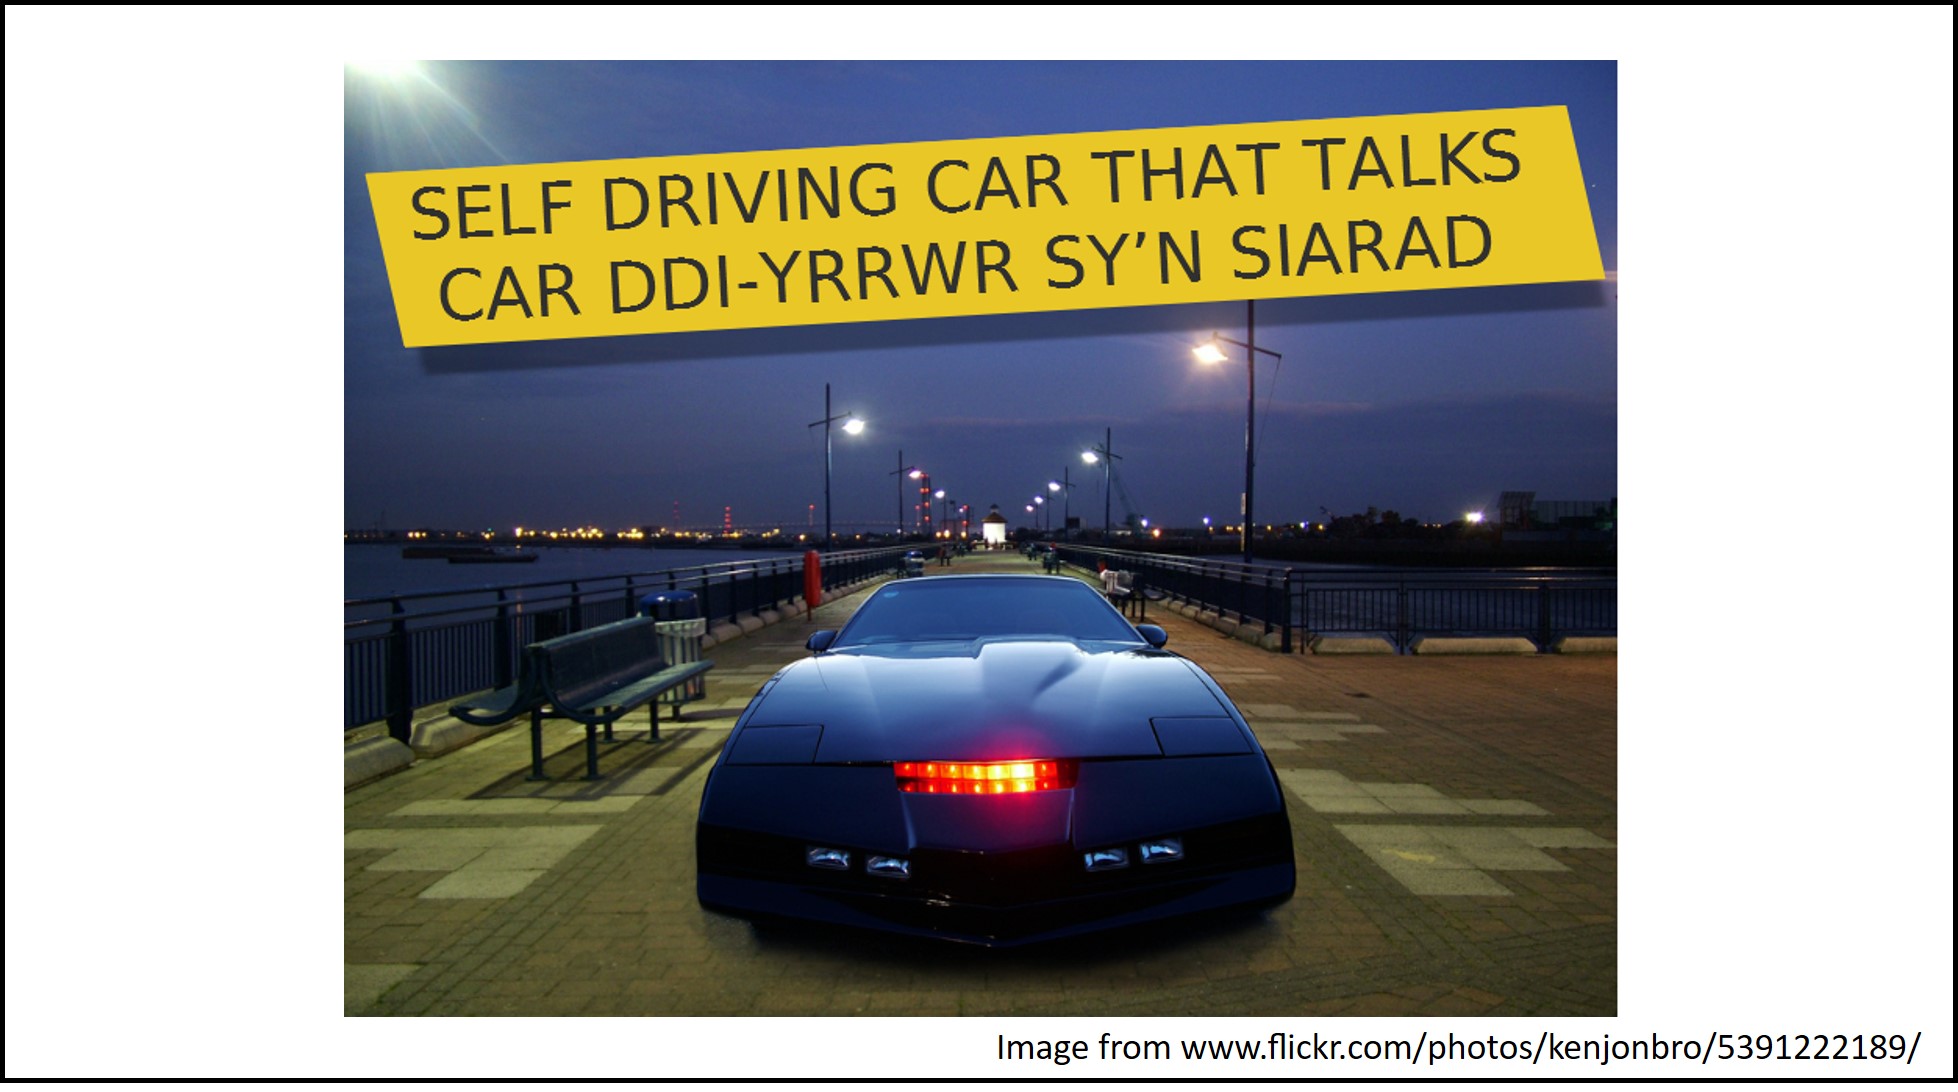 A self-driving car that talks